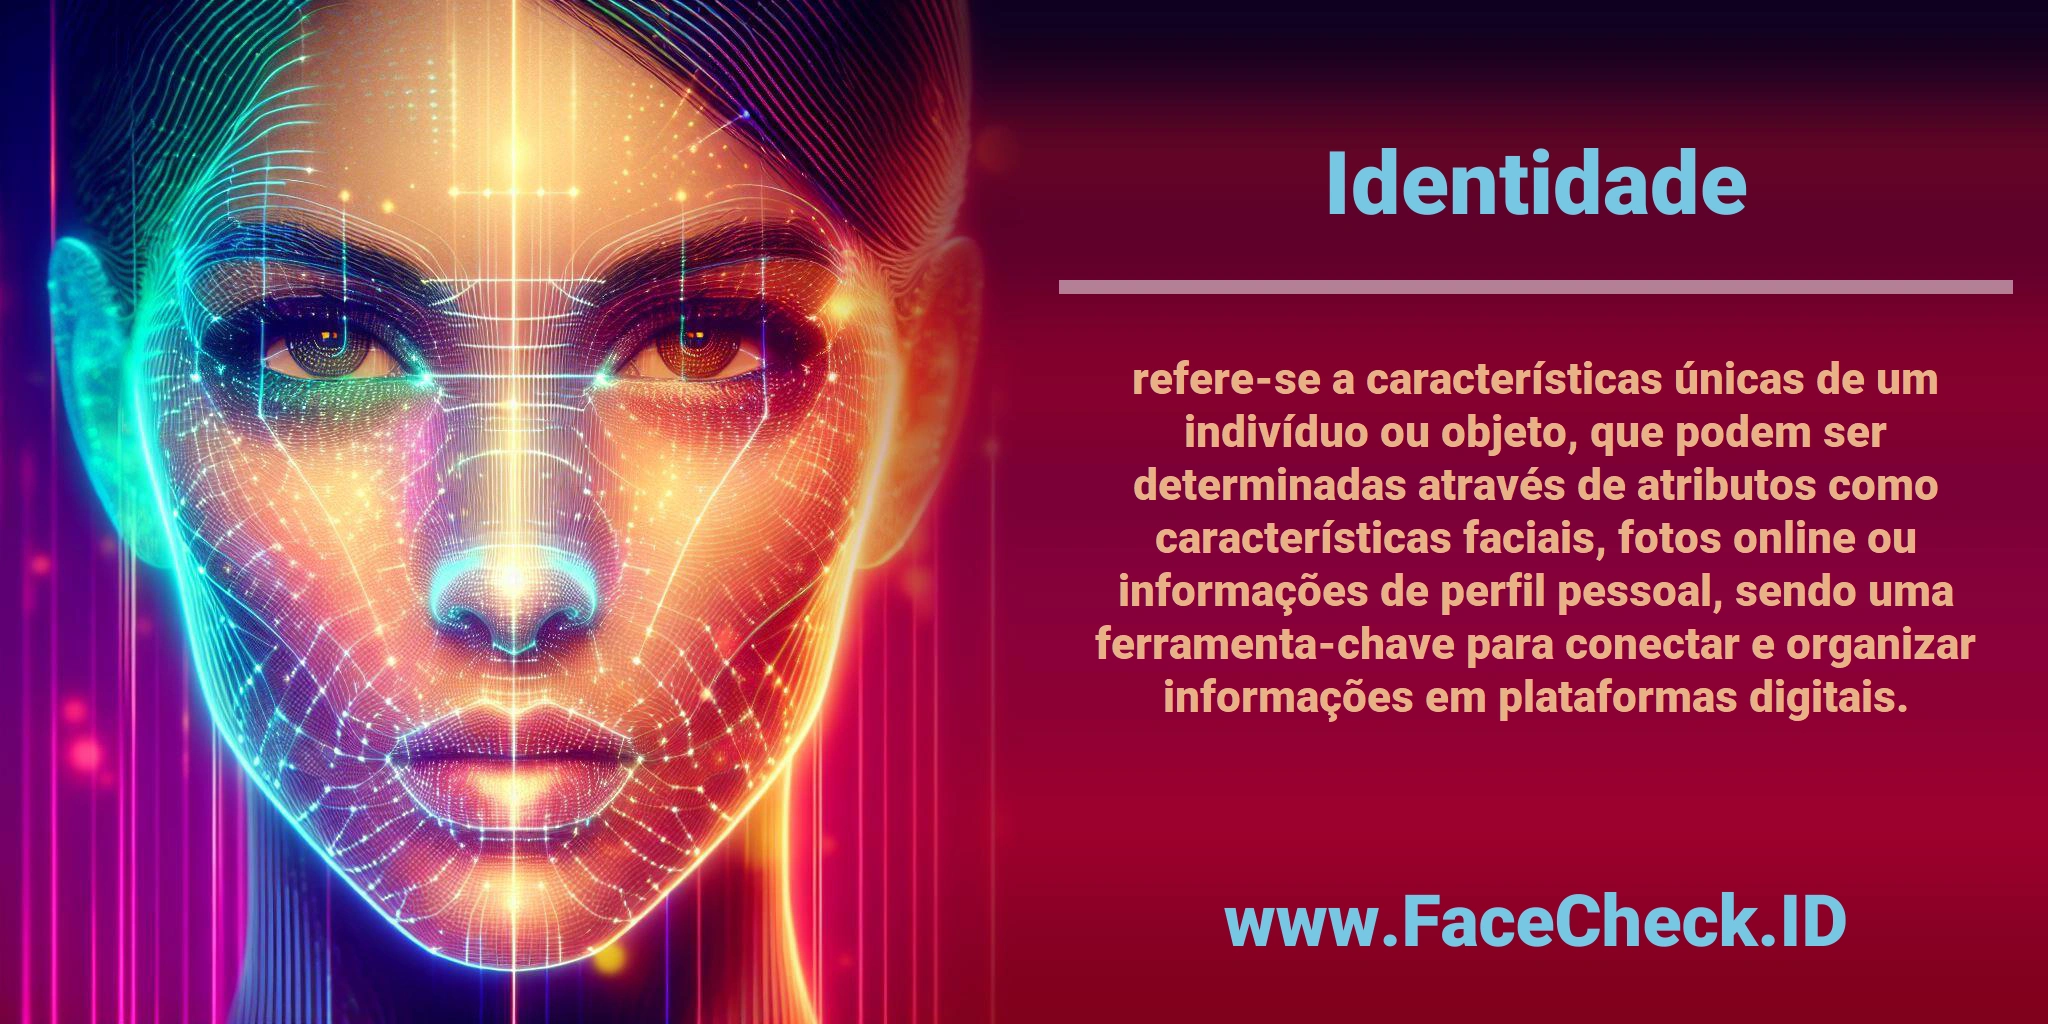 <b>Identidade</b> refere-se a características únicas de um indivíduo ou objeto, que podem ser determinadas através de atributos como características faciais, fotos online ou informações de perfil pessoal, sendo uma ferramenta-chave para conectar e organizar informações em plataformas digitais.